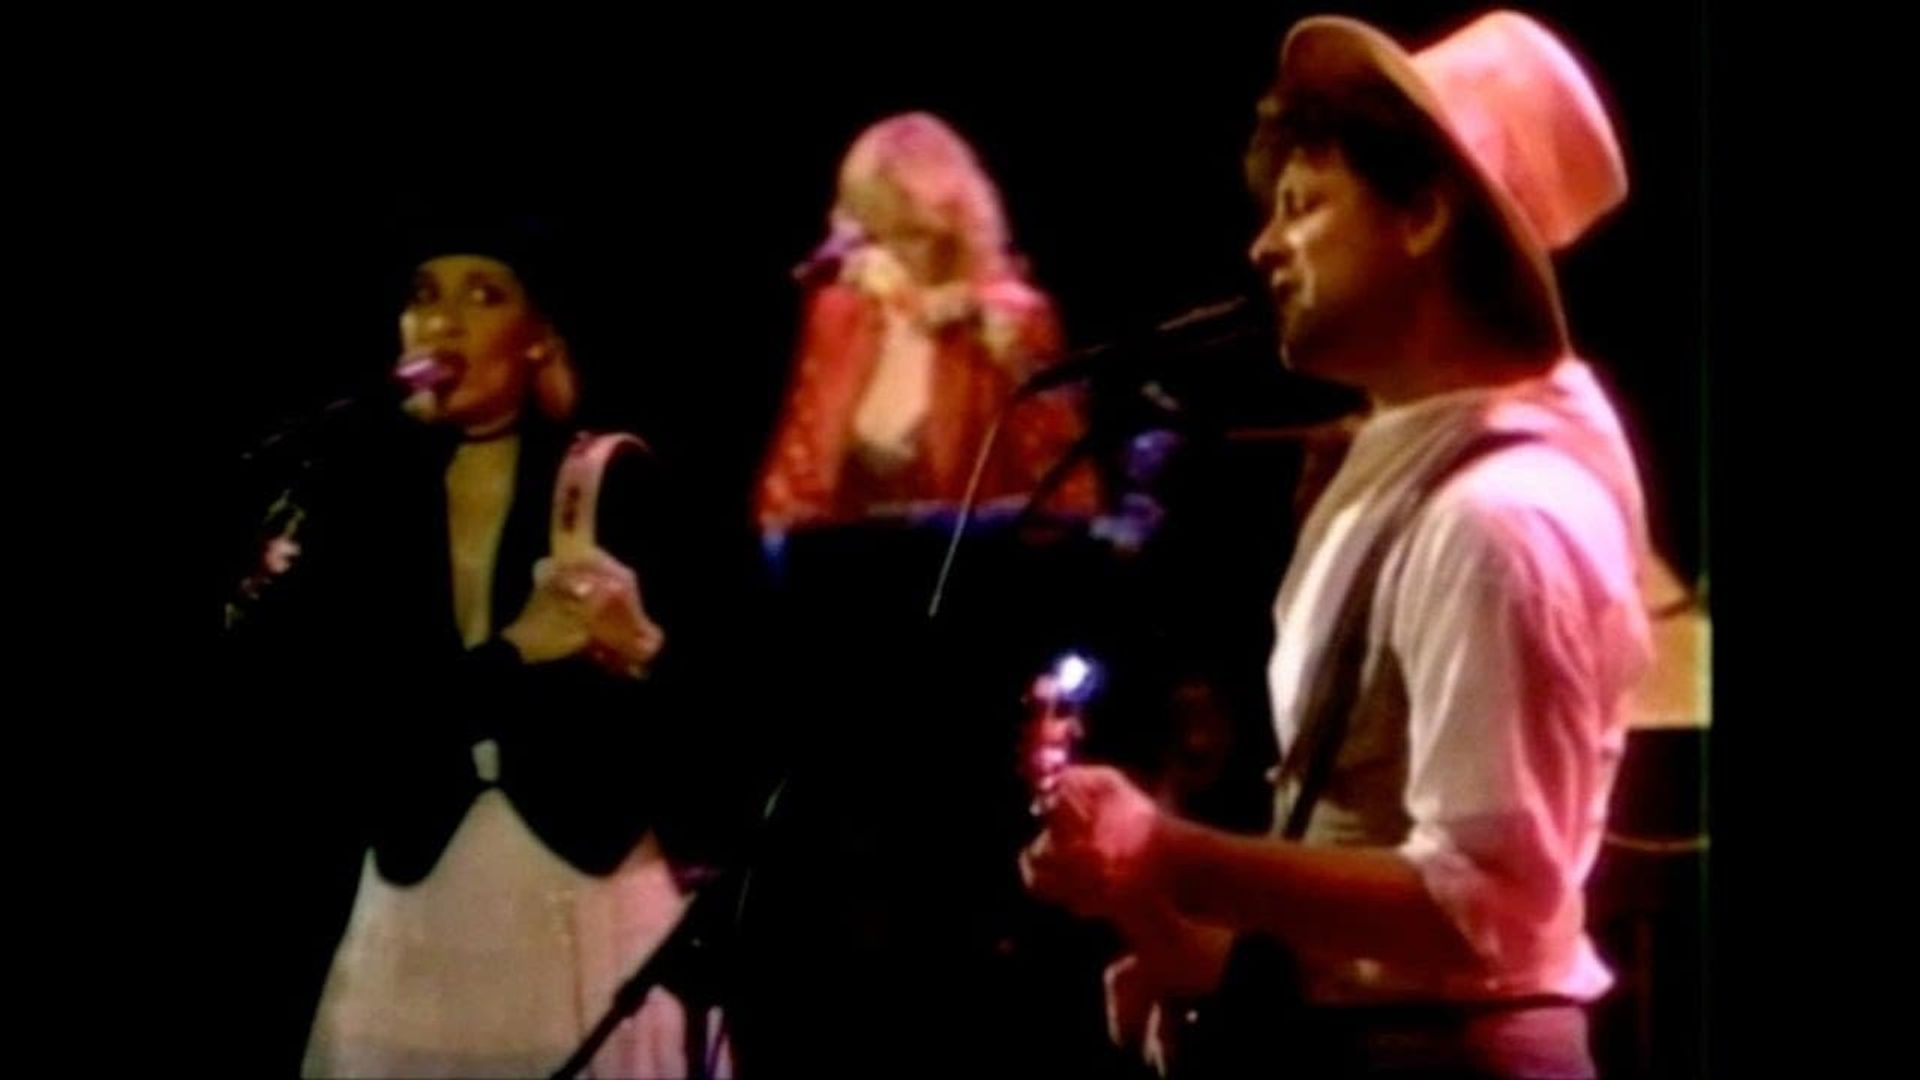 Fleetwood Mac in Concert: Mirage Tour '82 background